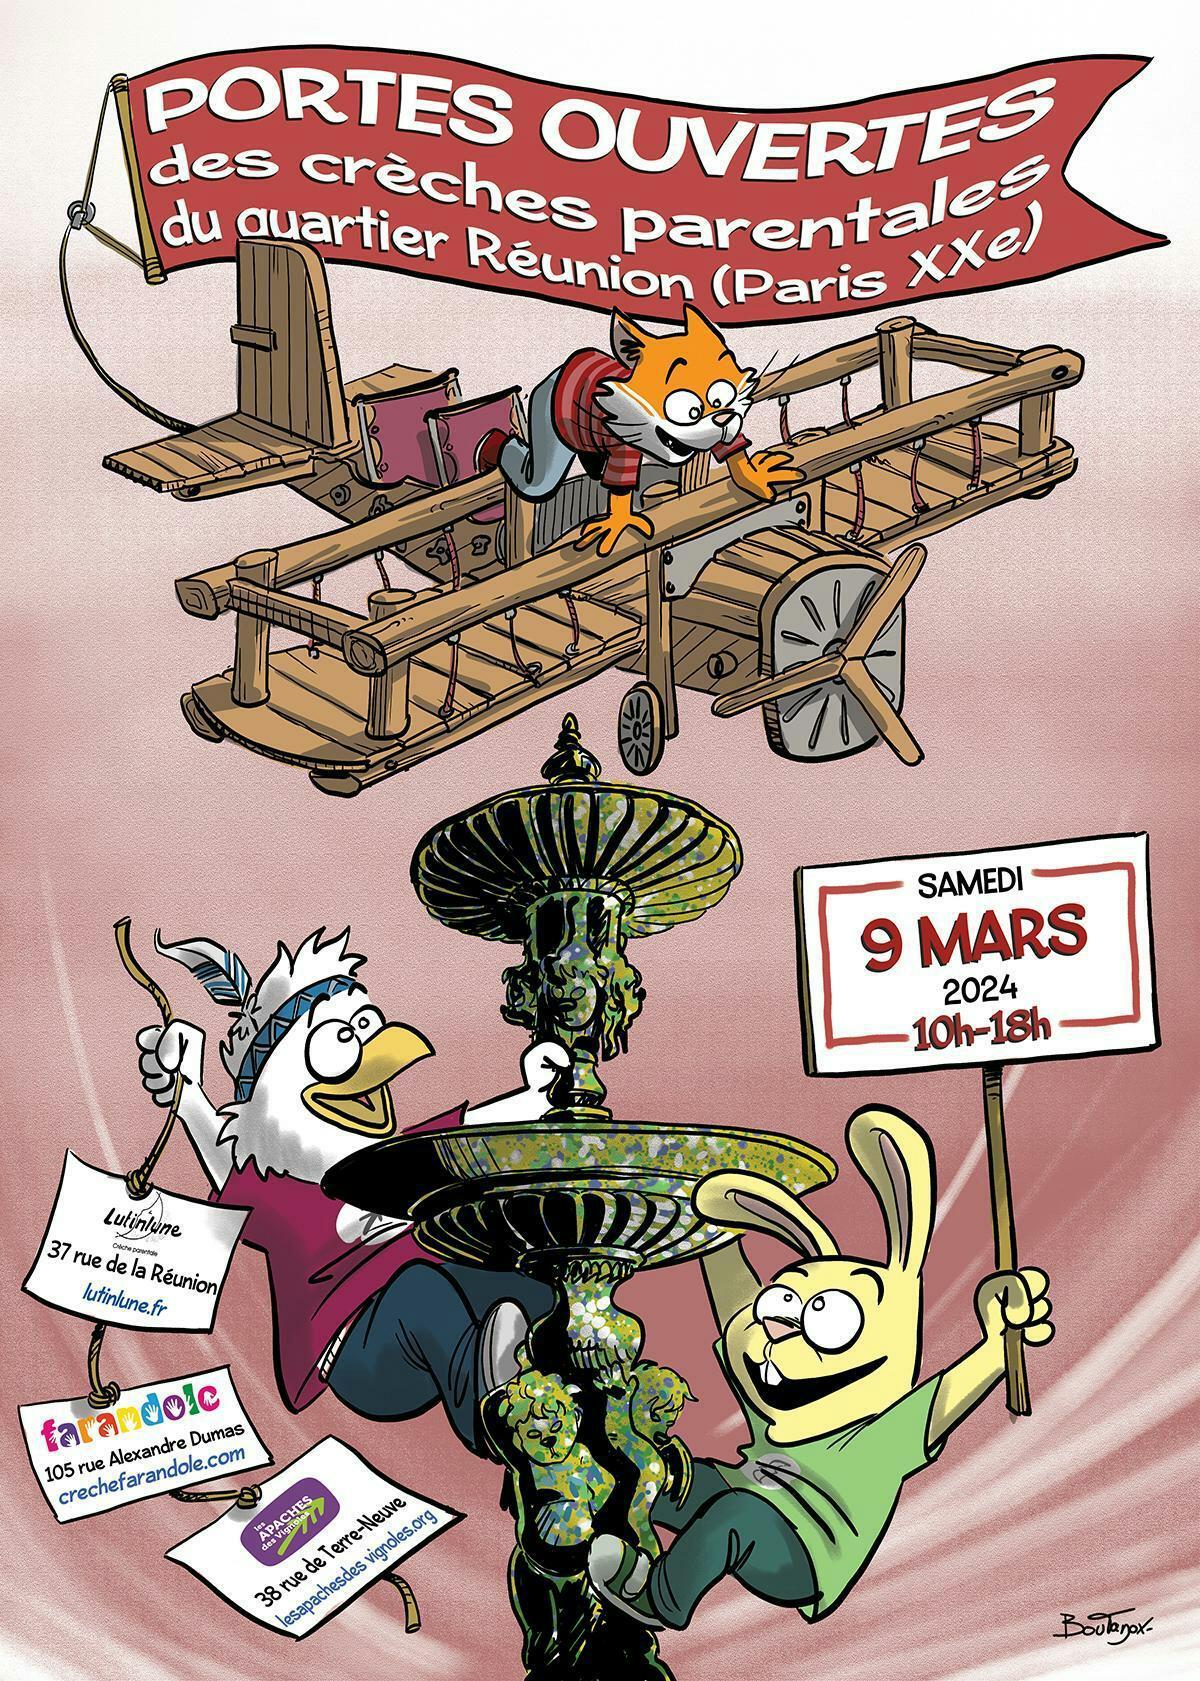 Le flyer de présentation des portes ouvertes de Farandole du 9 mars 2024